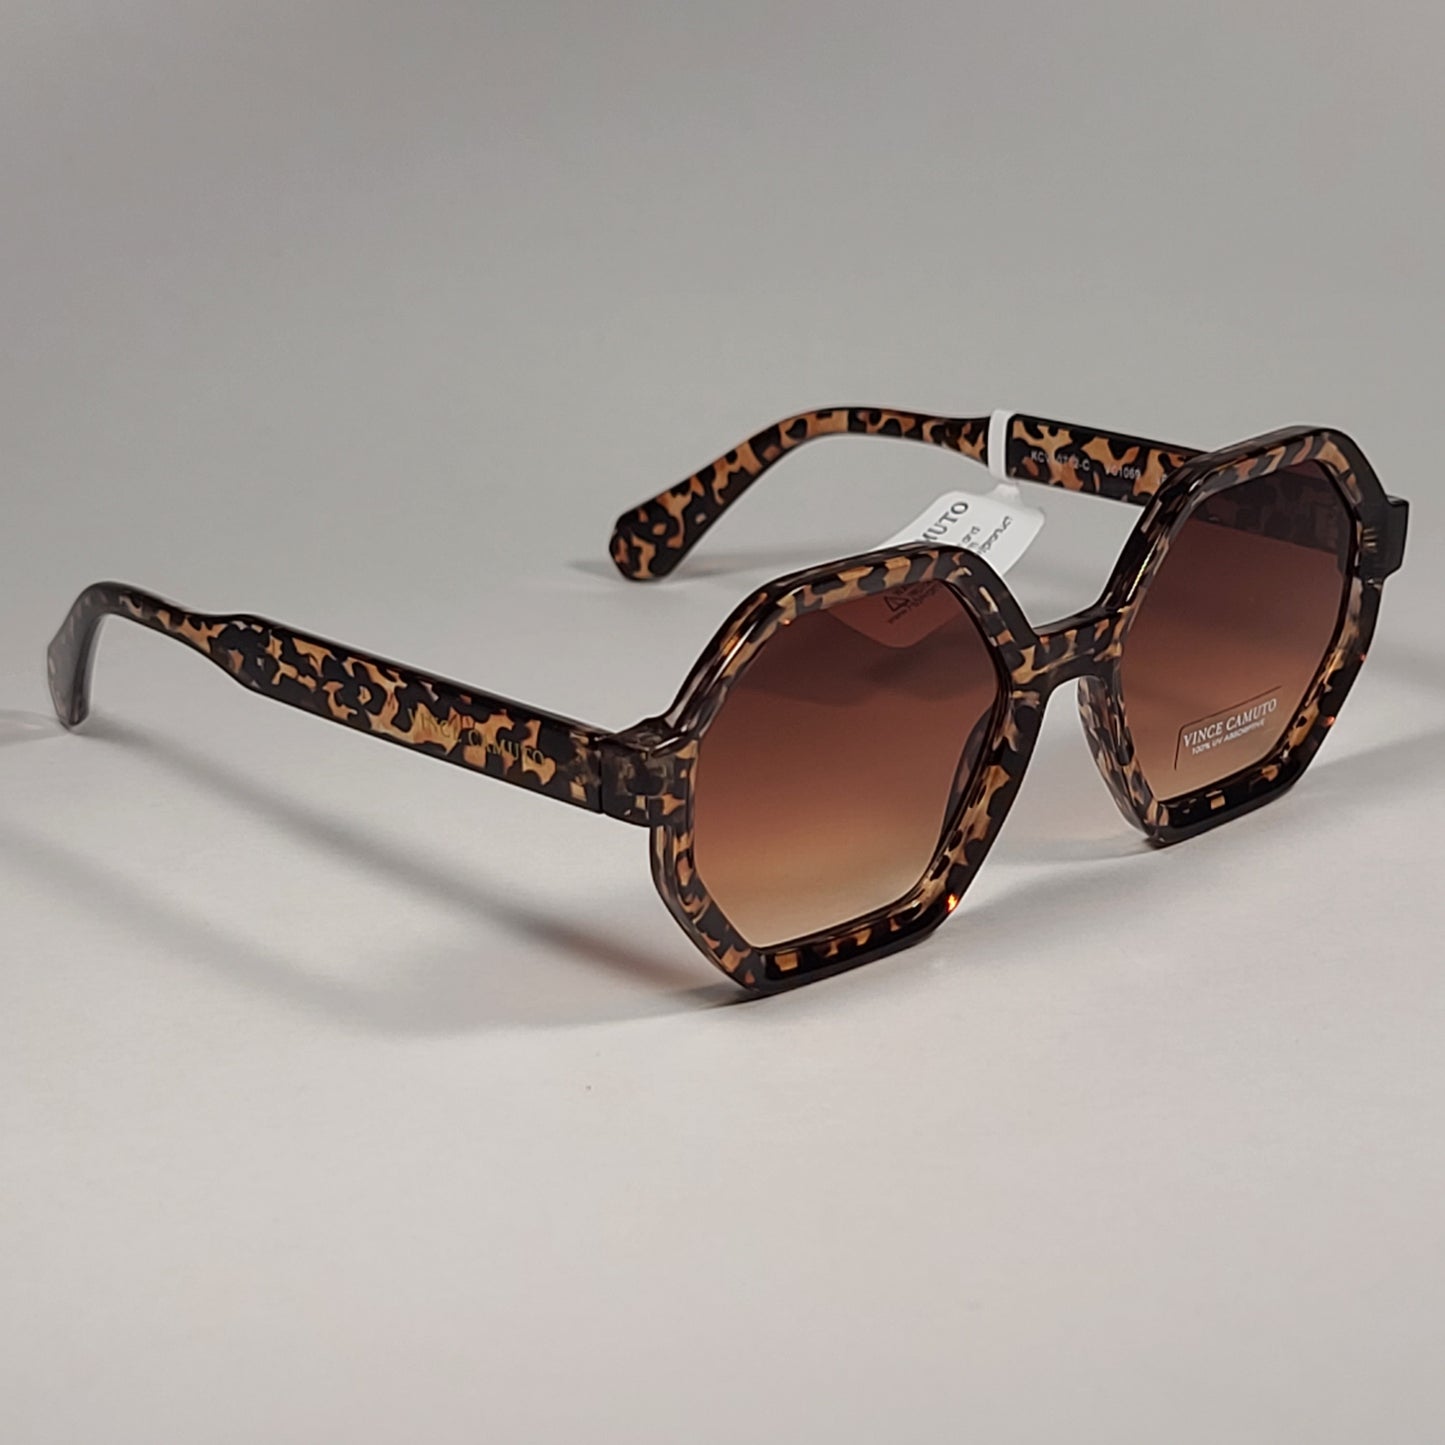 Vince Camuto VC1069 LE Geometric Sunglasses Leopard Frame Brown Gradient Lens - Sunglasses